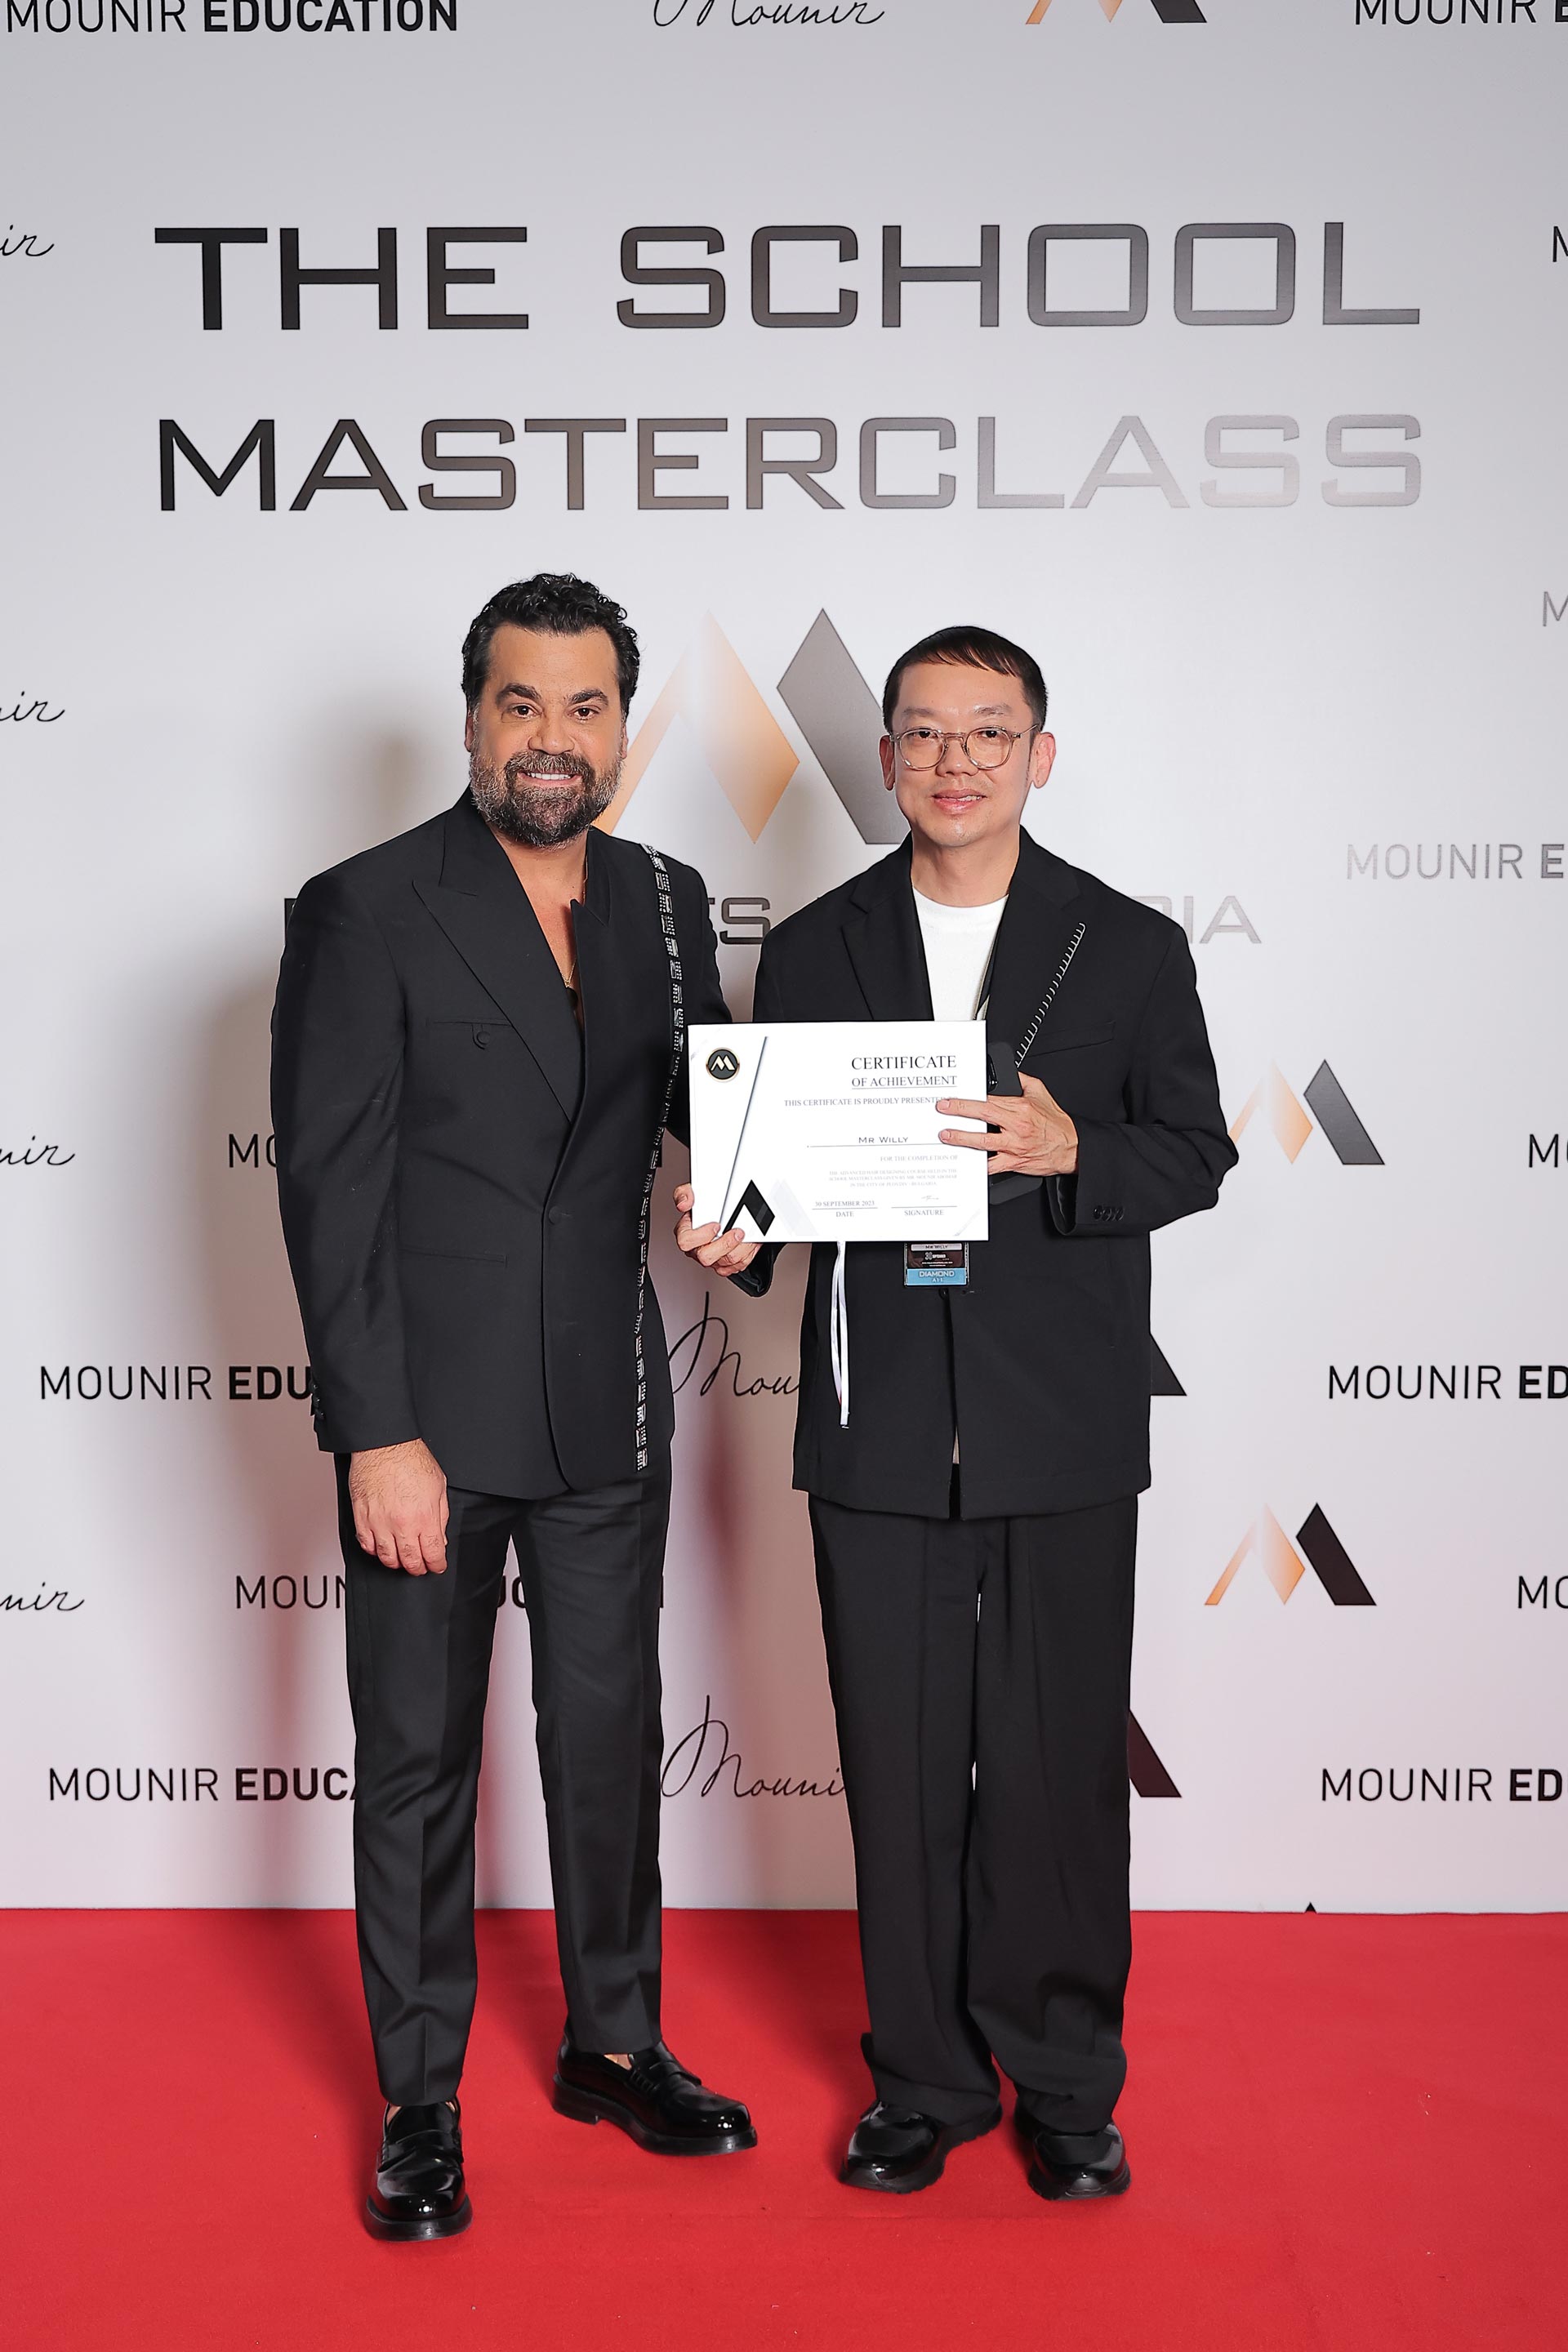 Mounir Master Class